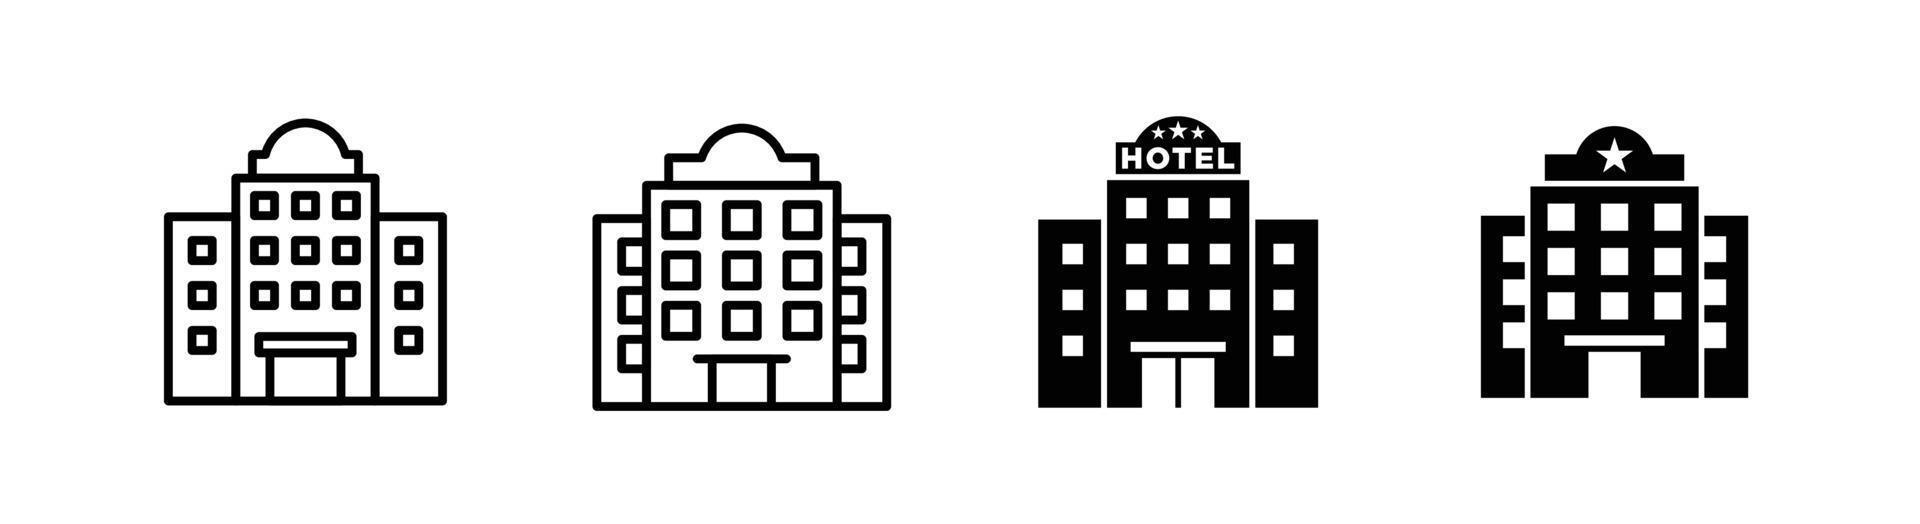 elemento de design de ícone de construção de hotel adequado para site, design de impressão ou aplicativo vetor